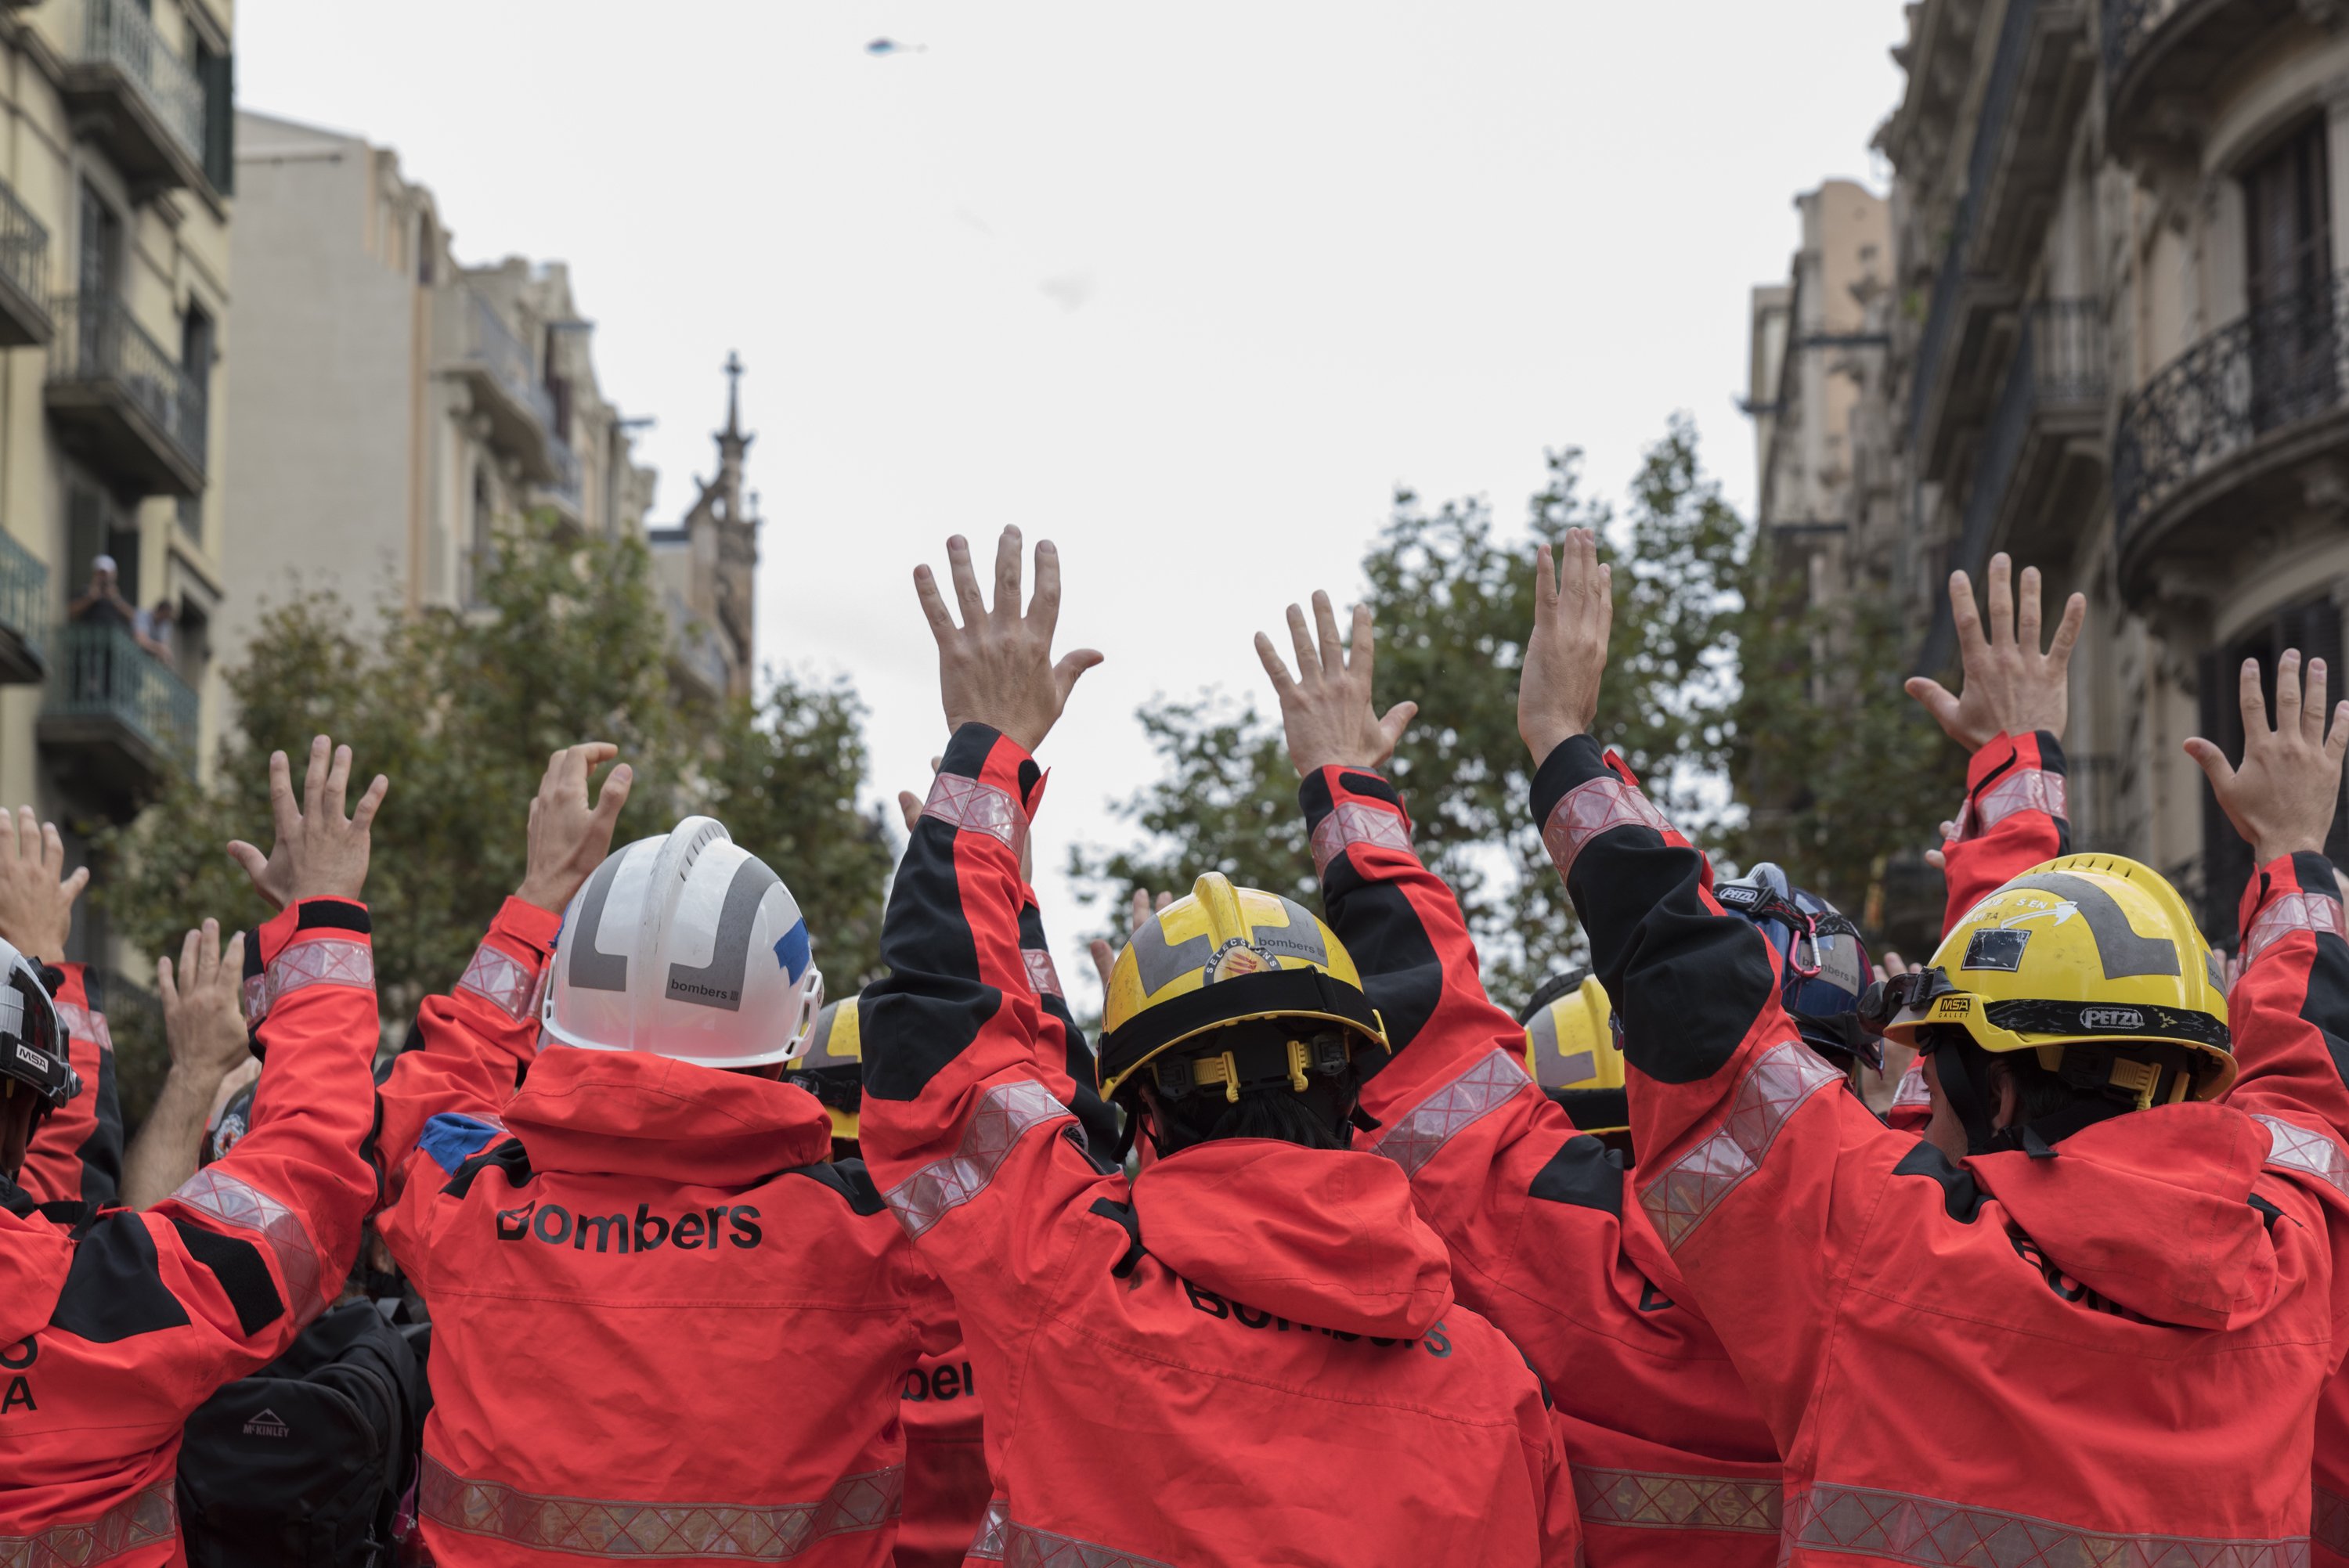 A la delegació del Govern espanyol: “Menys policies, més bombers”